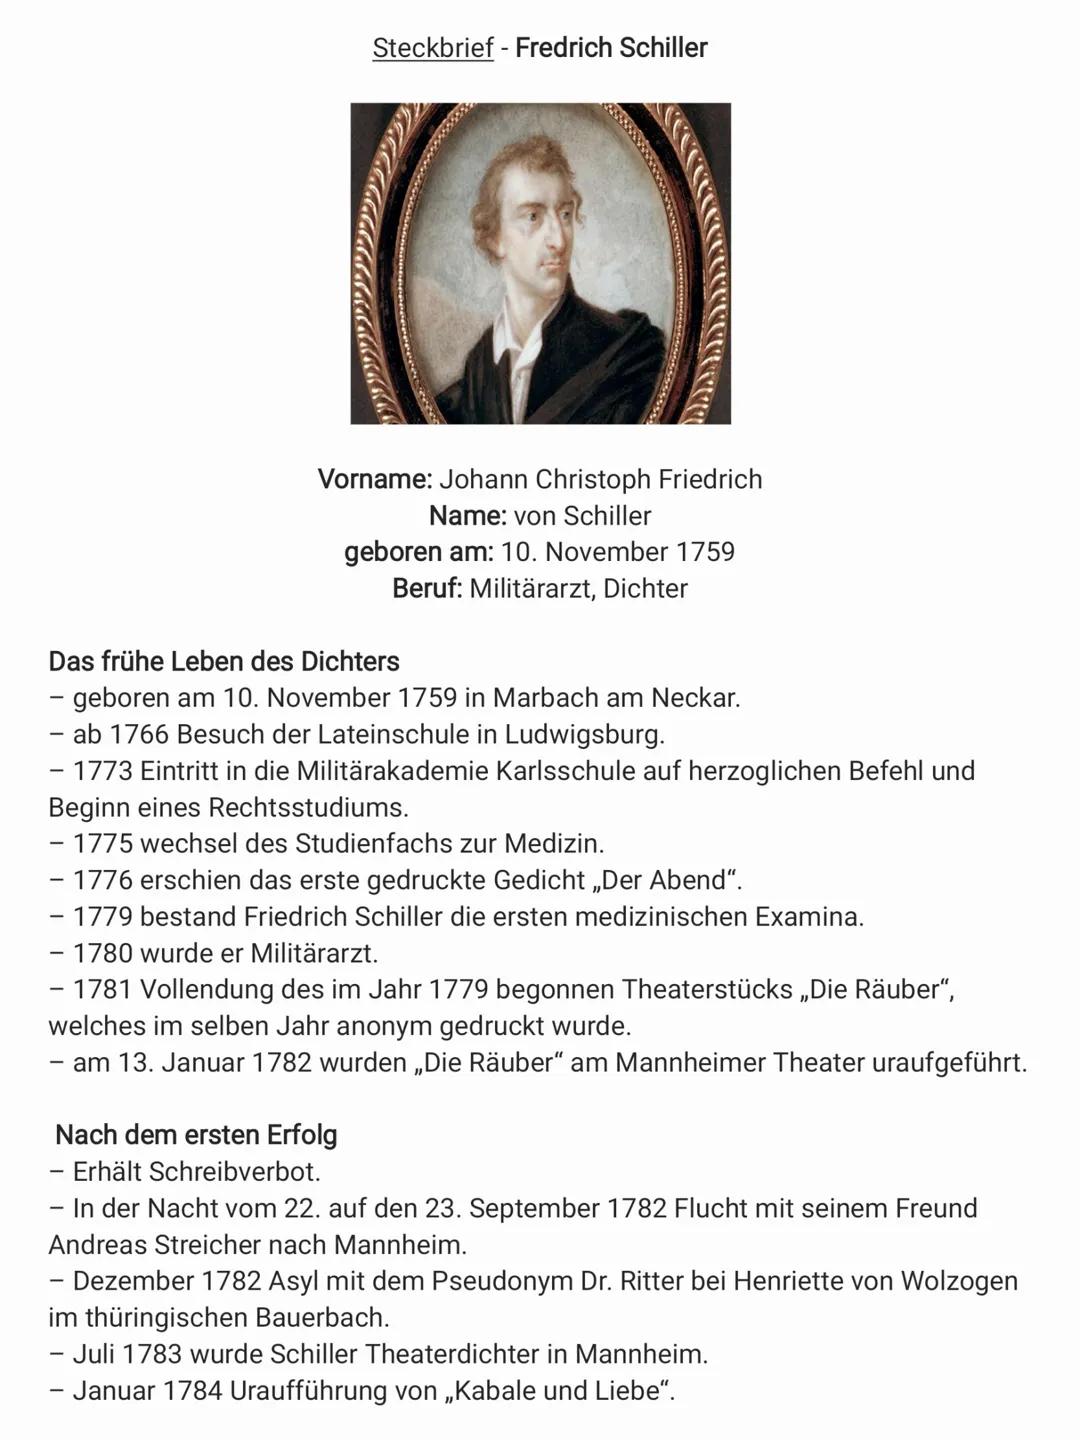 Steckbrief - Fredrich Schiller
Vorname: Johann Christoph Friedrich
Name: von Schiller
geboren am: 10. November 1759
Beruf: Militärarzt, Dich